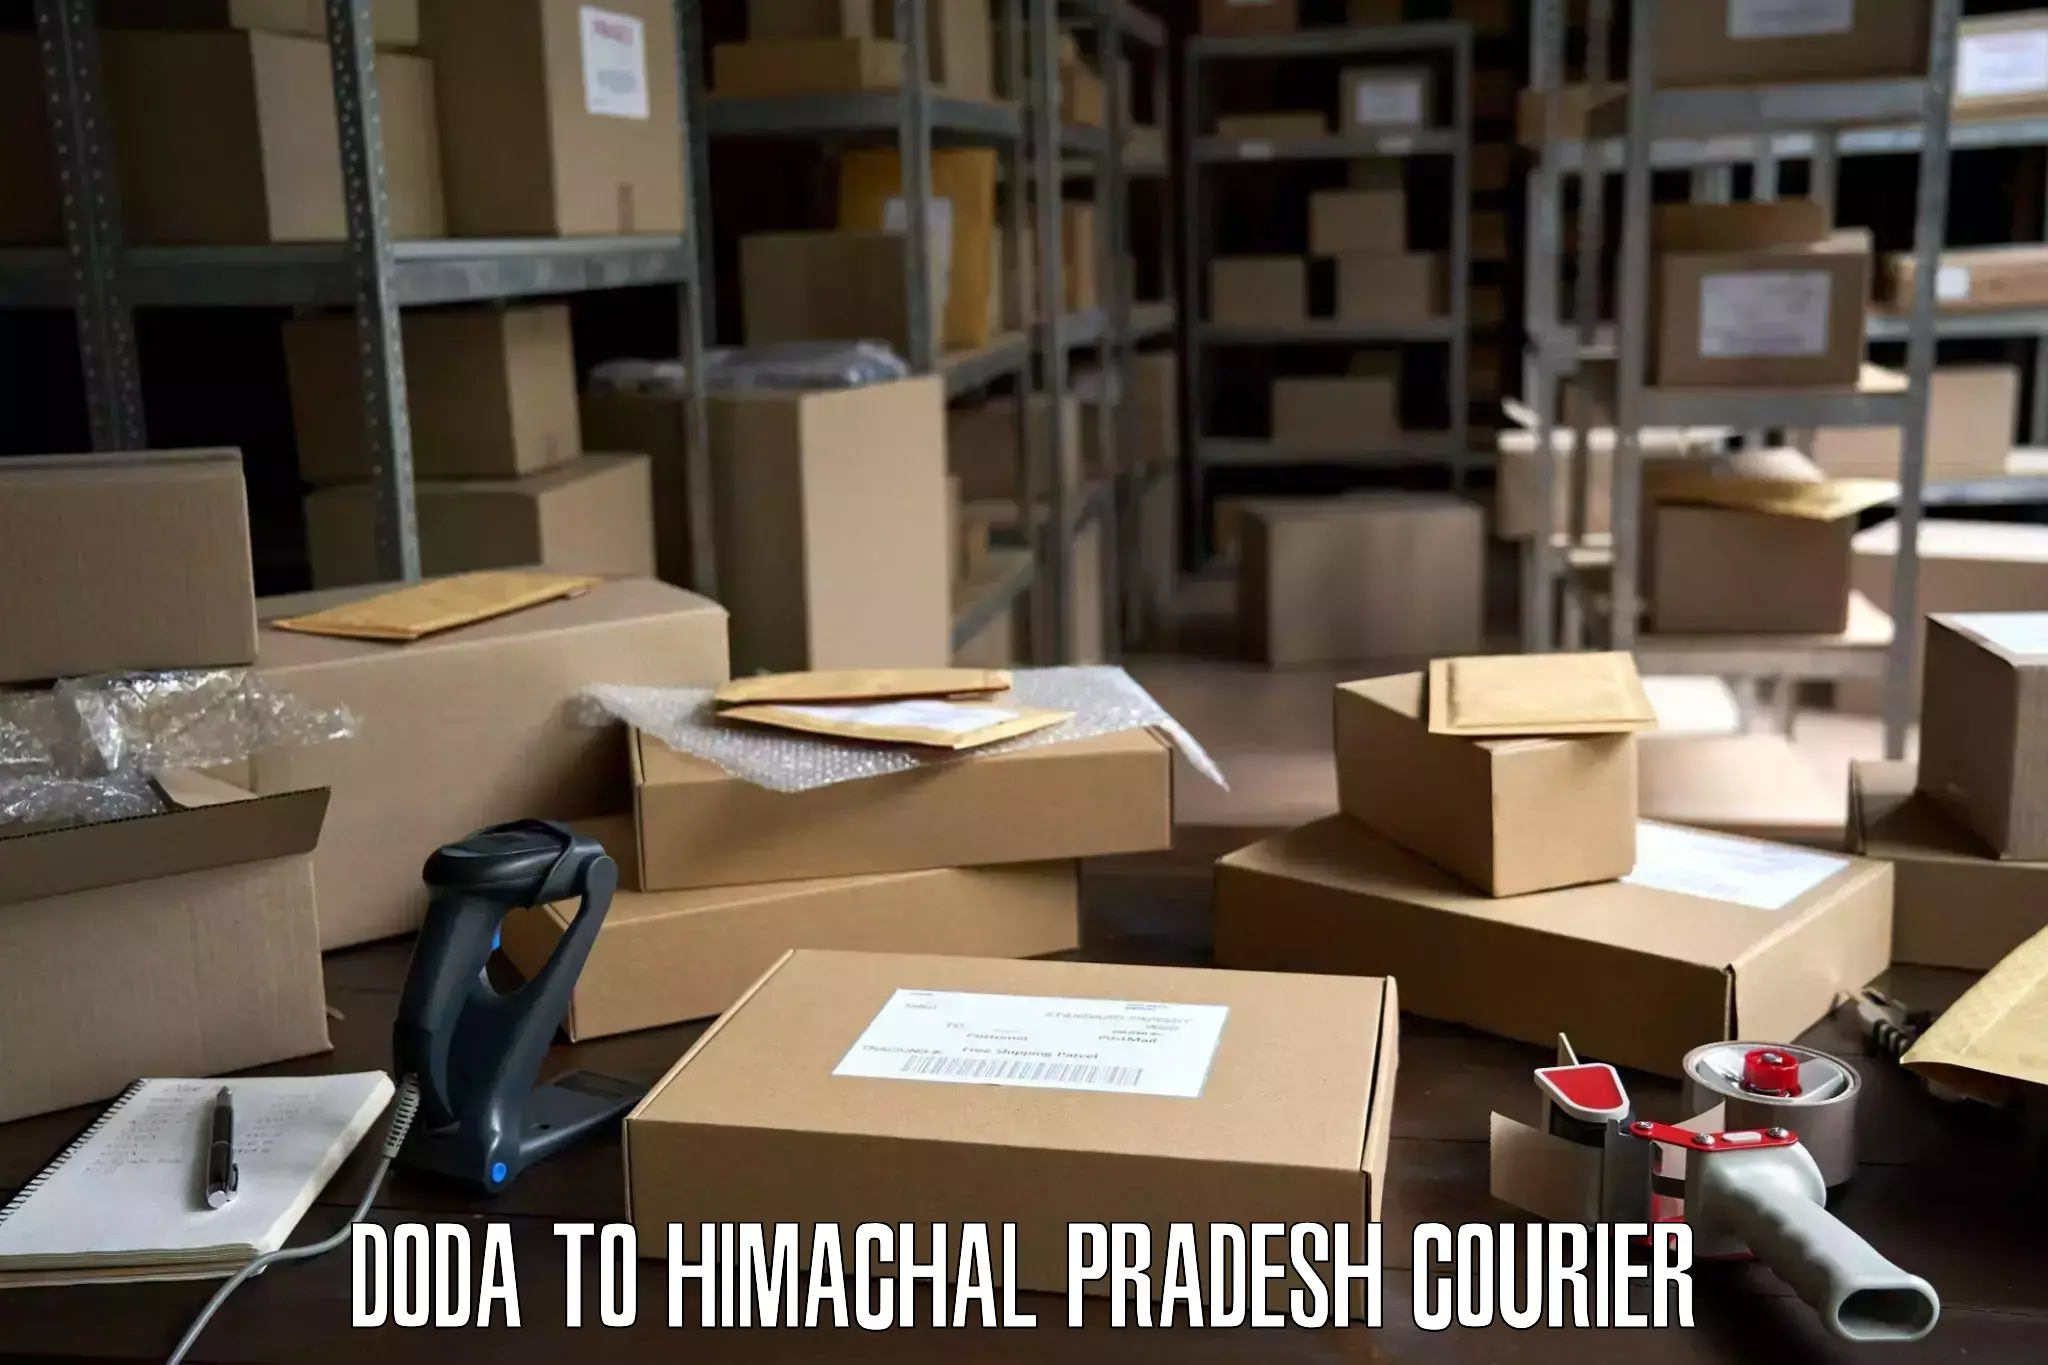 Specialized moving company Doda to Kachhera